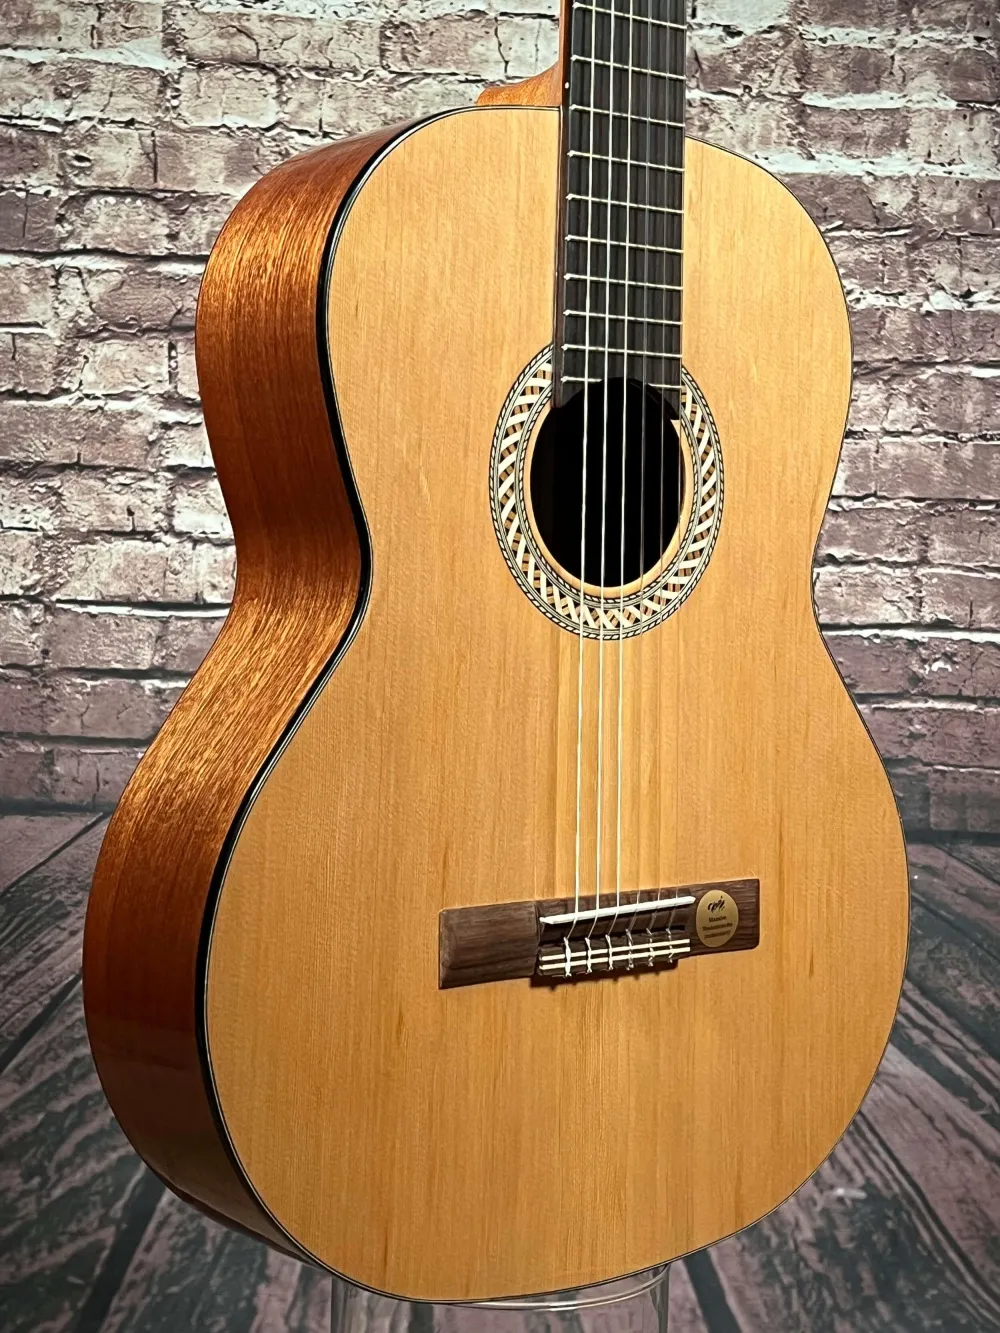 Decke-Detailansicht einer Hellweg 4/4 Konzertgitarre (Klassische Gitarre) Modell CS 32-C